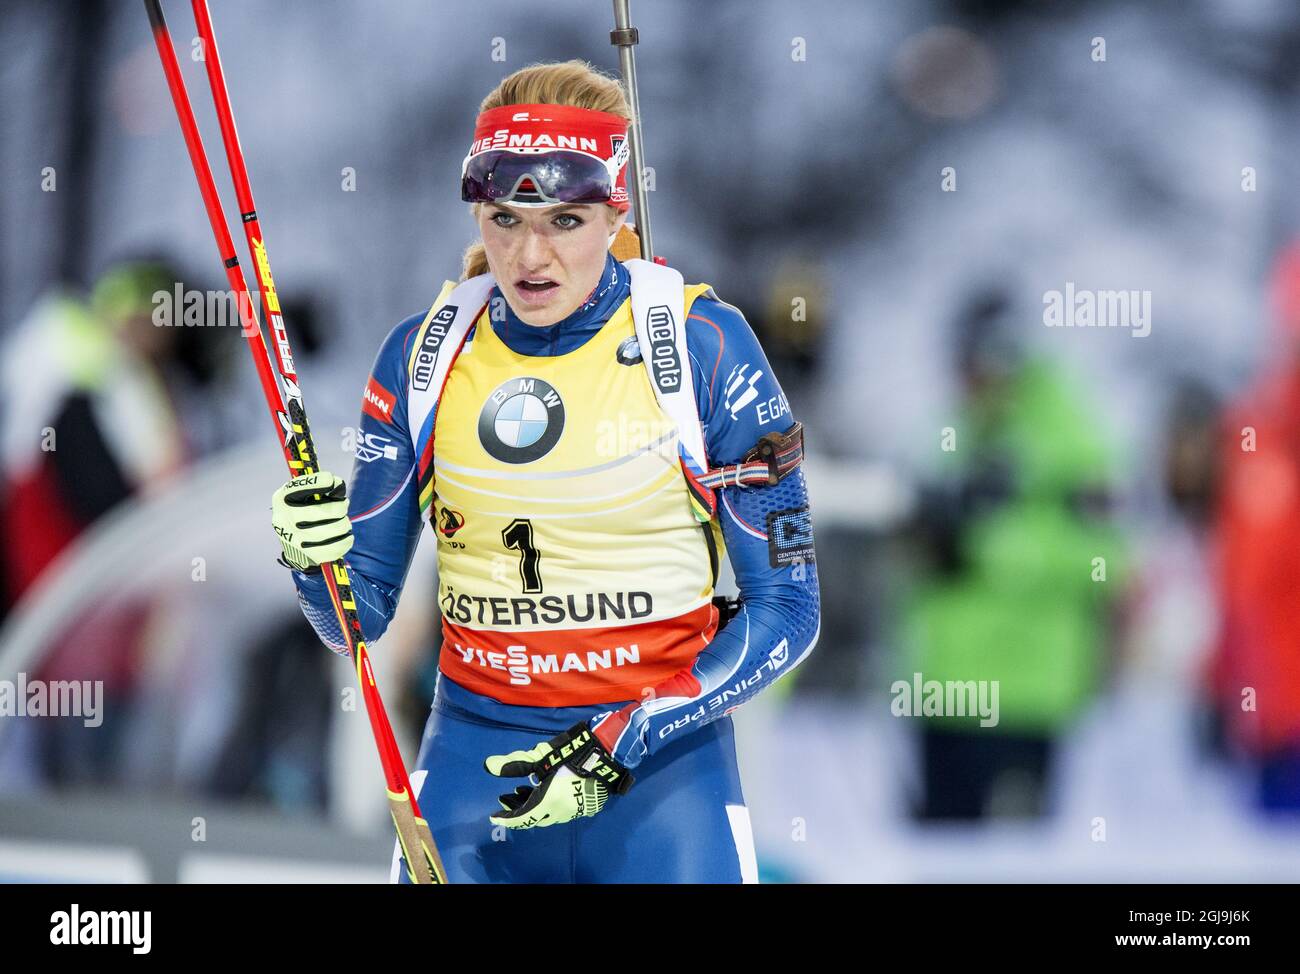 Gabriela Soukalova della Repubblica Ceca in azione durante la gara femminile di inseguimento di 10 km alla IBU Biathlon World Cup di Ostersund, Svezia, il 6 dicembre 2015. Foto: Christine Olsson / TT / code 10430 Foto Stock